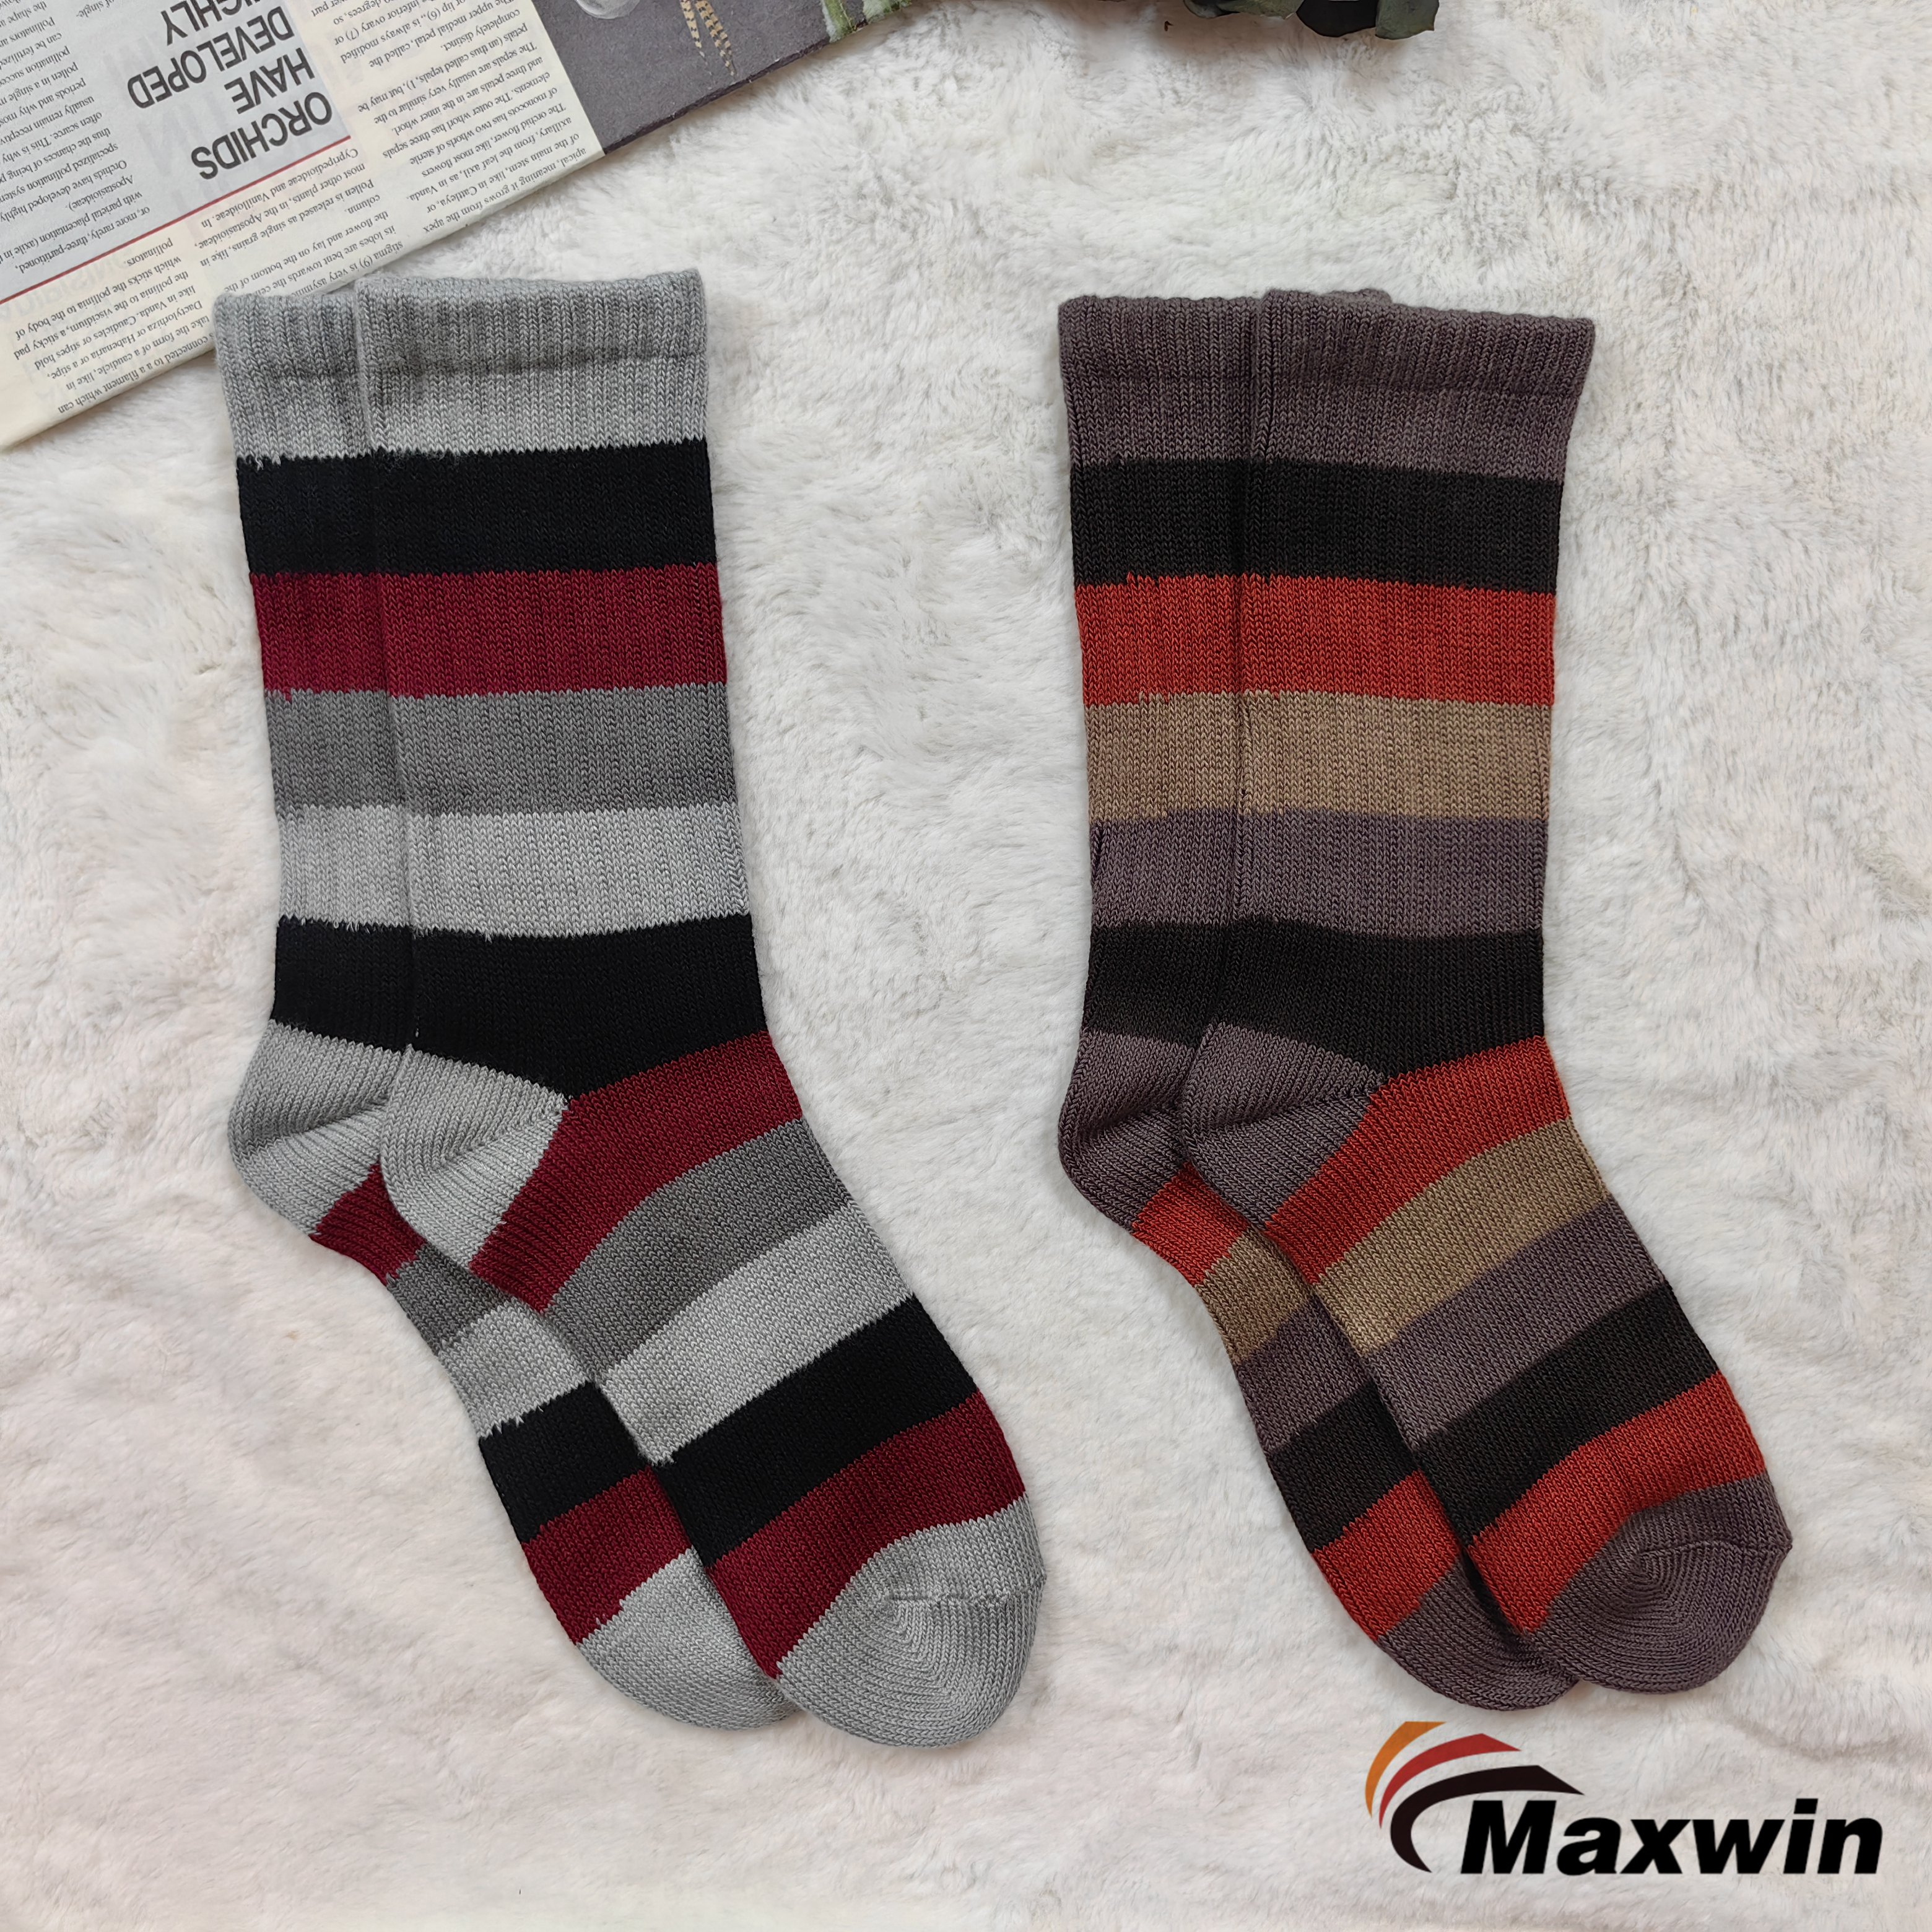 Woollen socks for women: 6 Best Winter Socks for Women to Stay Warm - The Economic Times